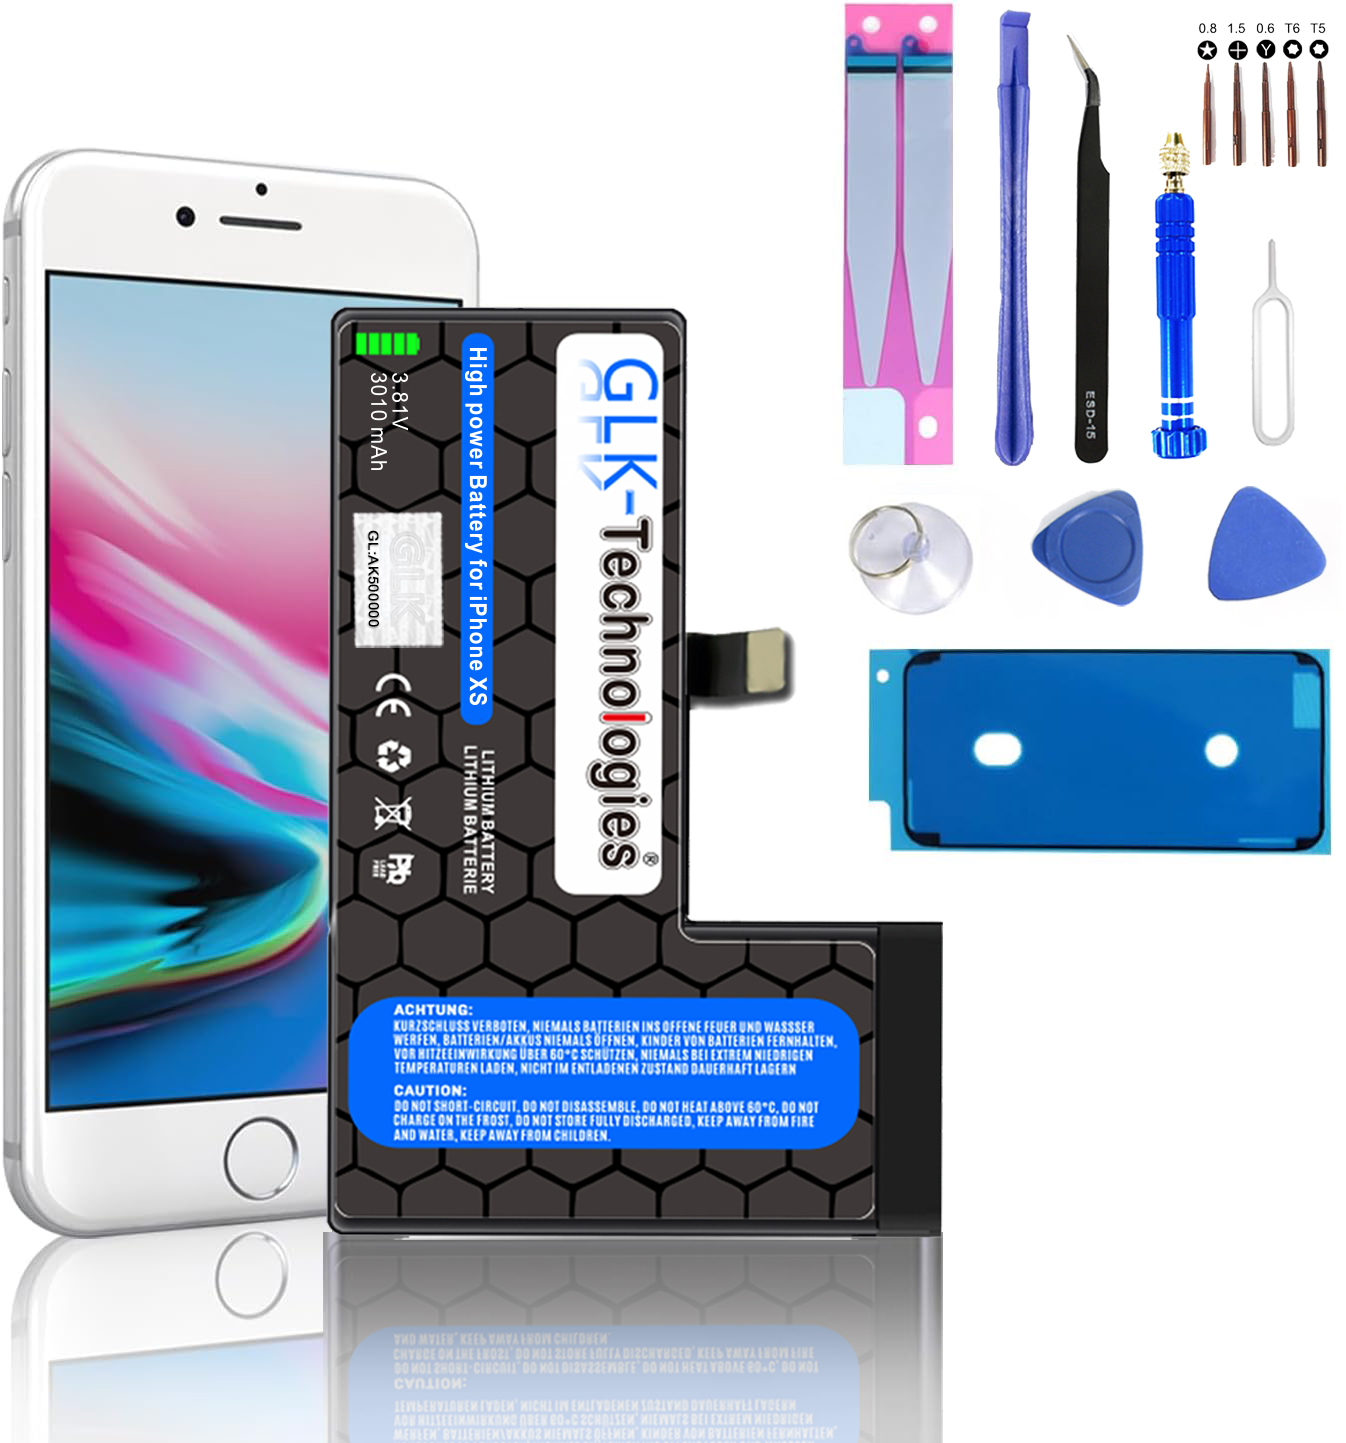 2740 mAh Ersatz Apple XS PROFI Lithium-Ionen-Akku Akku, Smartphone iPhone Werkzeug GLK-TECHNOLOGIES inkl.